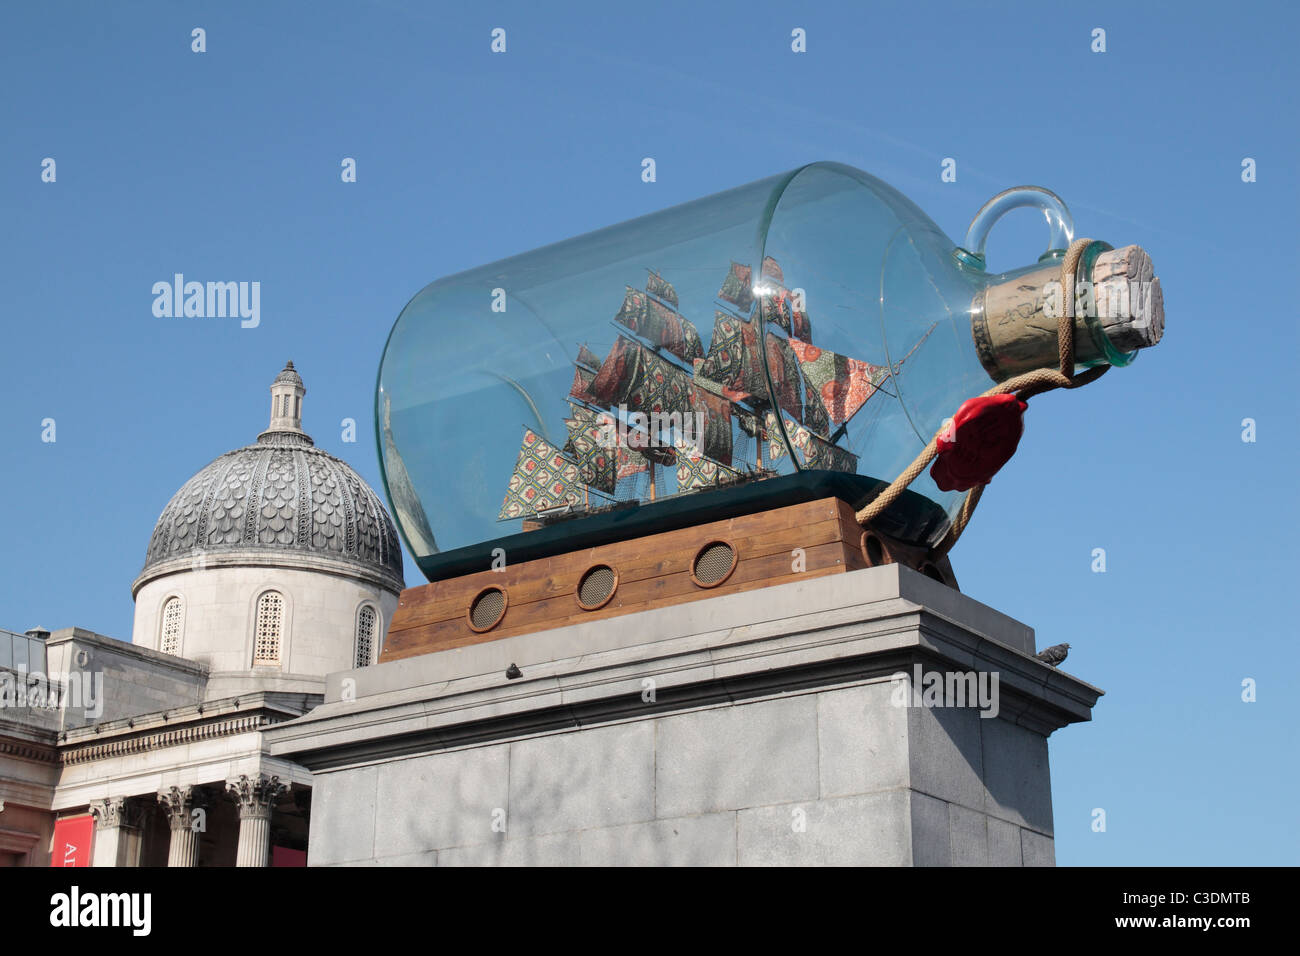 "Nelsons Schiff in der Flasche", eine Kunstinstallation von Yinka Shonibare auf dem vierten Sockel auf dem Trafalgar Square, London, UK. Stockfoto